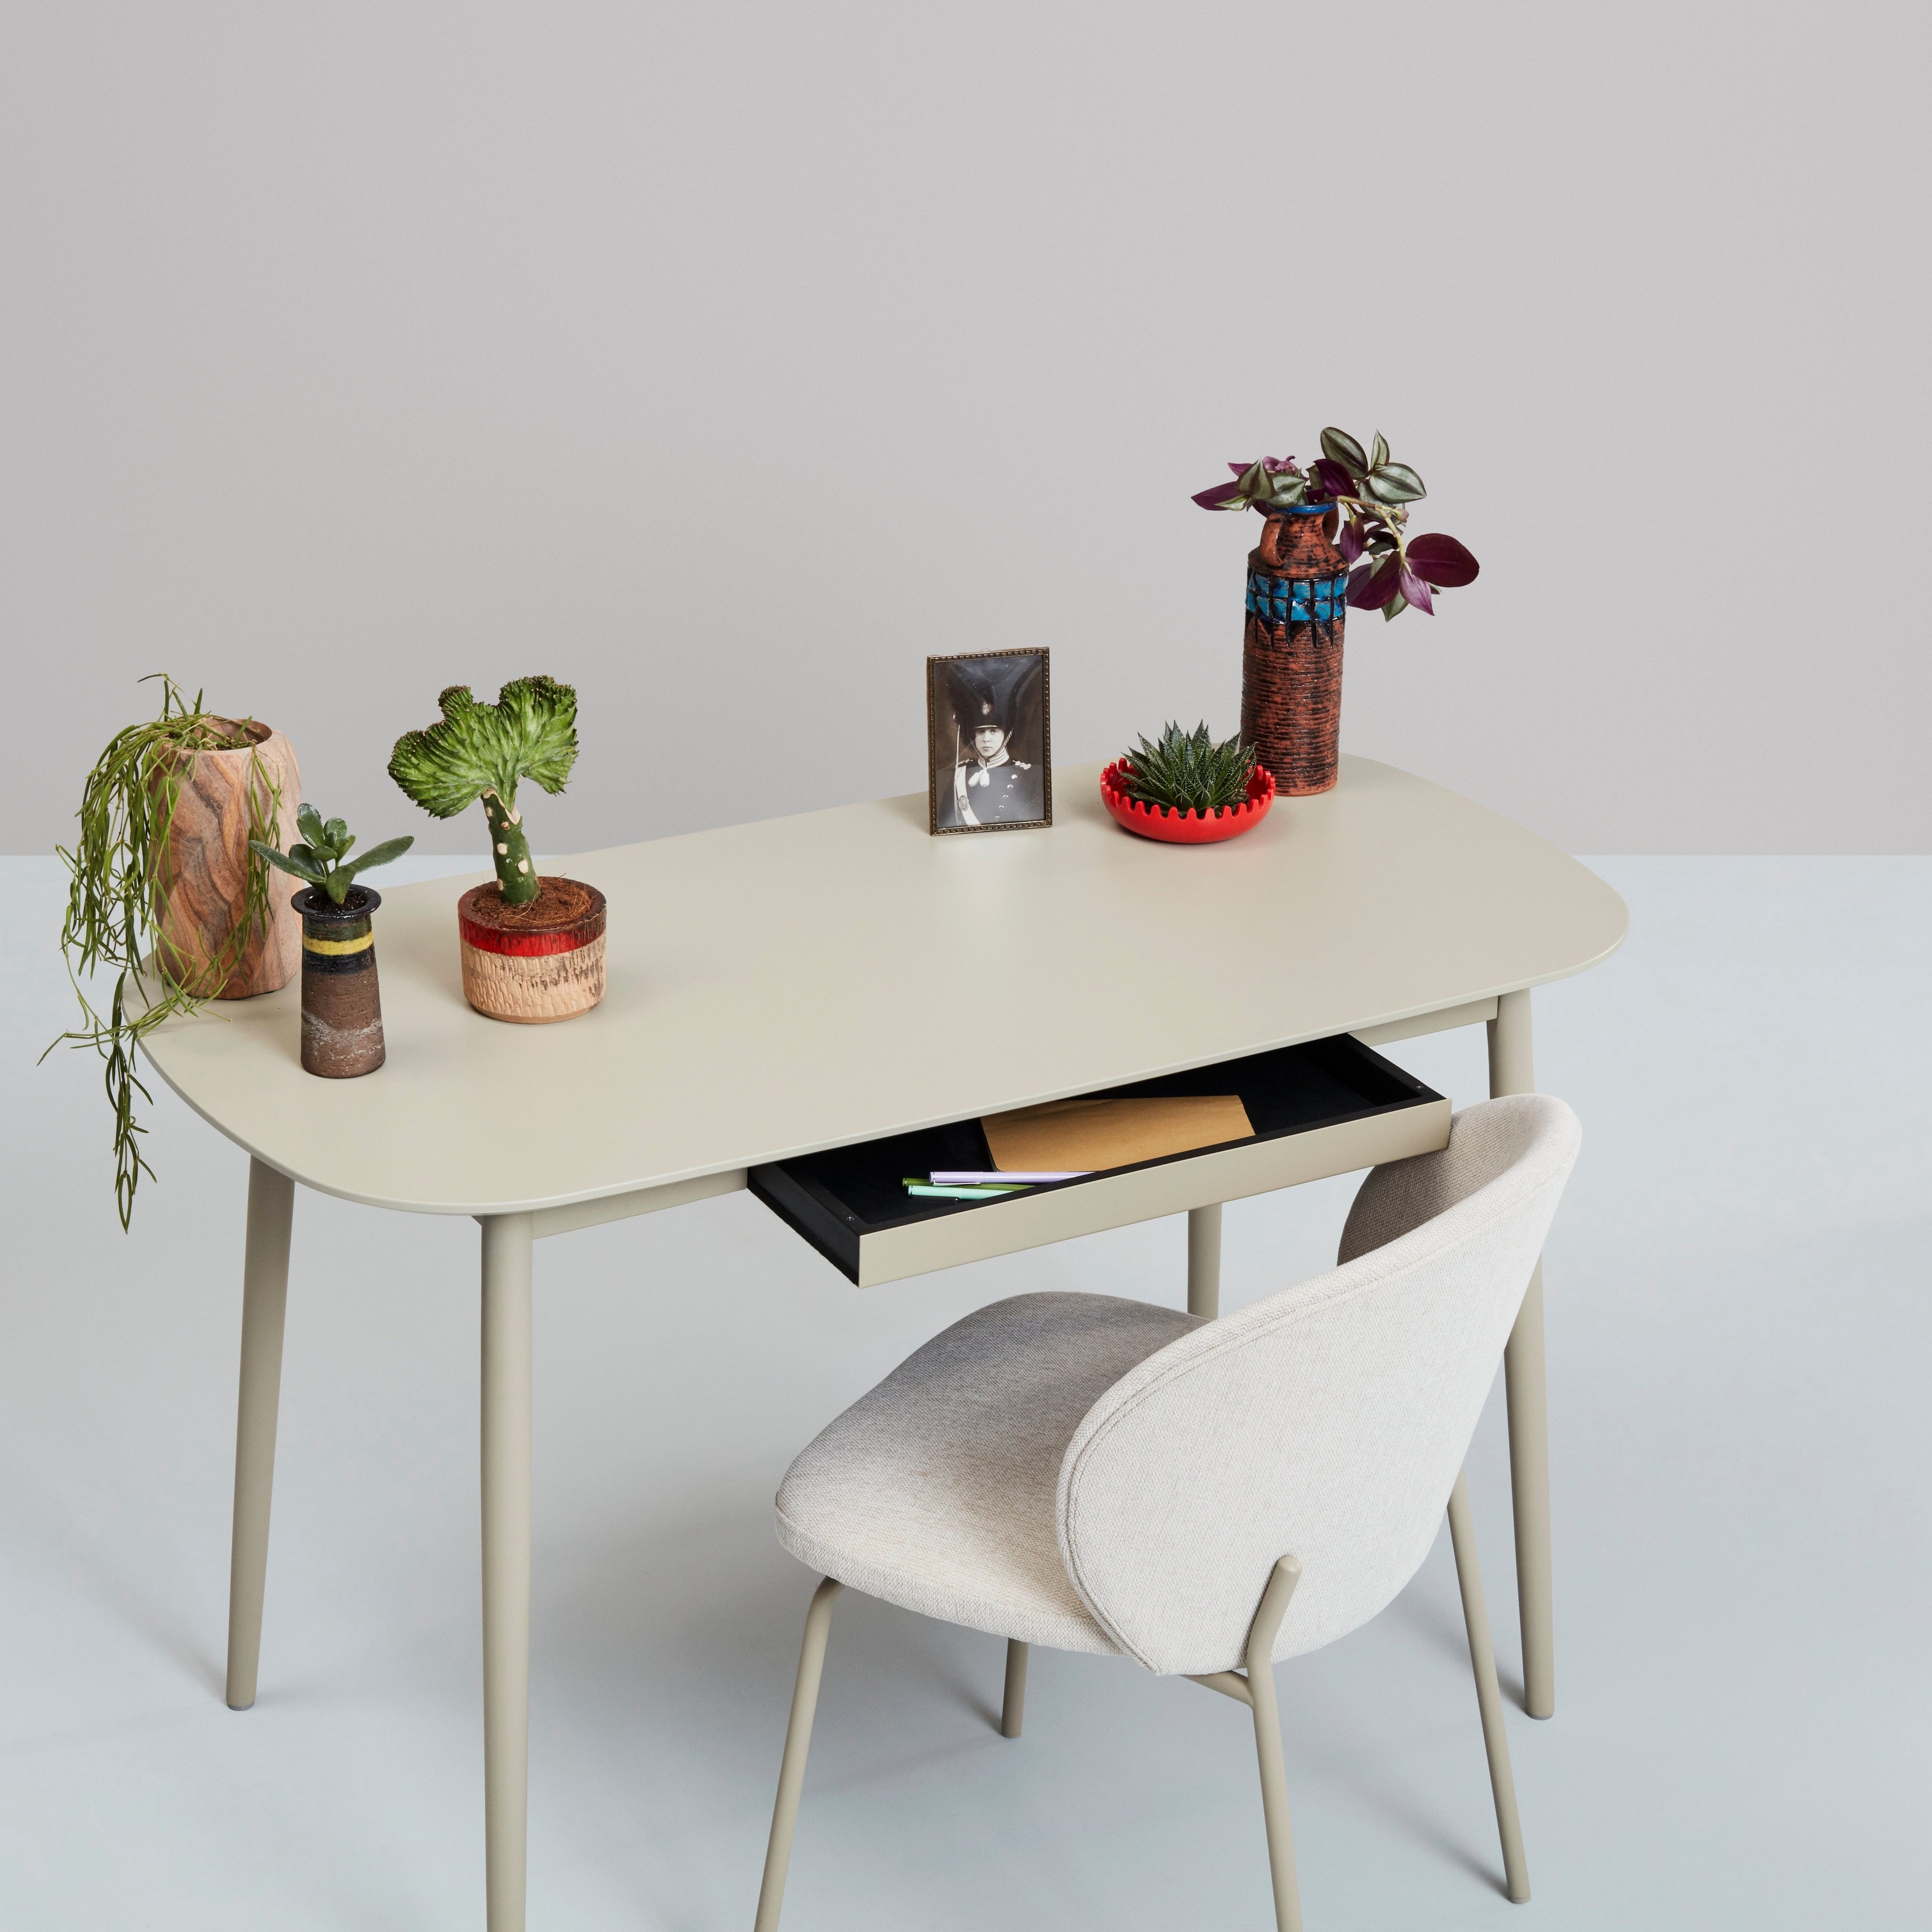 Hvitt skrivebord med planter, dekorative elementer og en stol mot en nøytral bakgrunn.